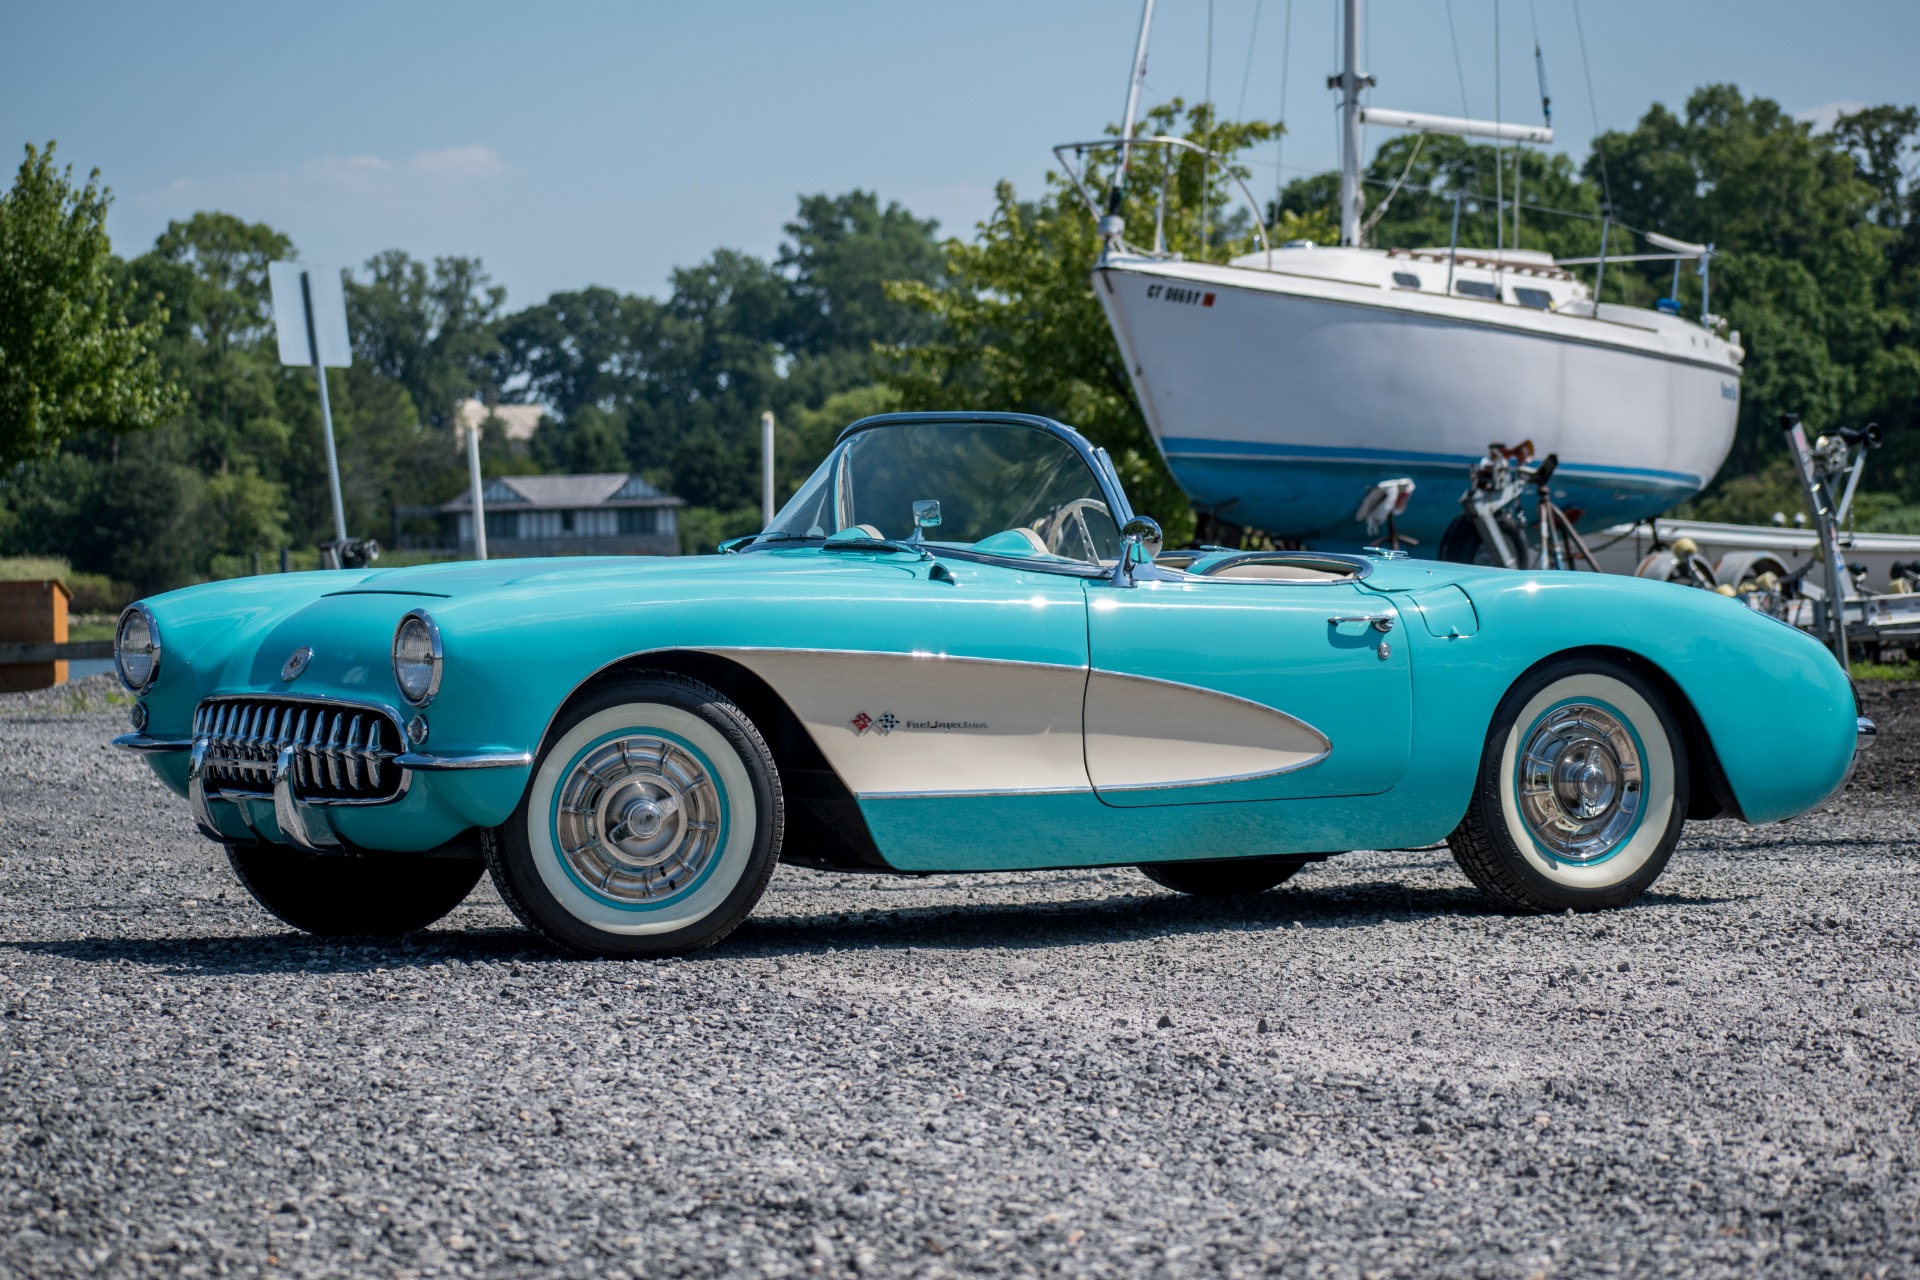 The 1957 Corvette